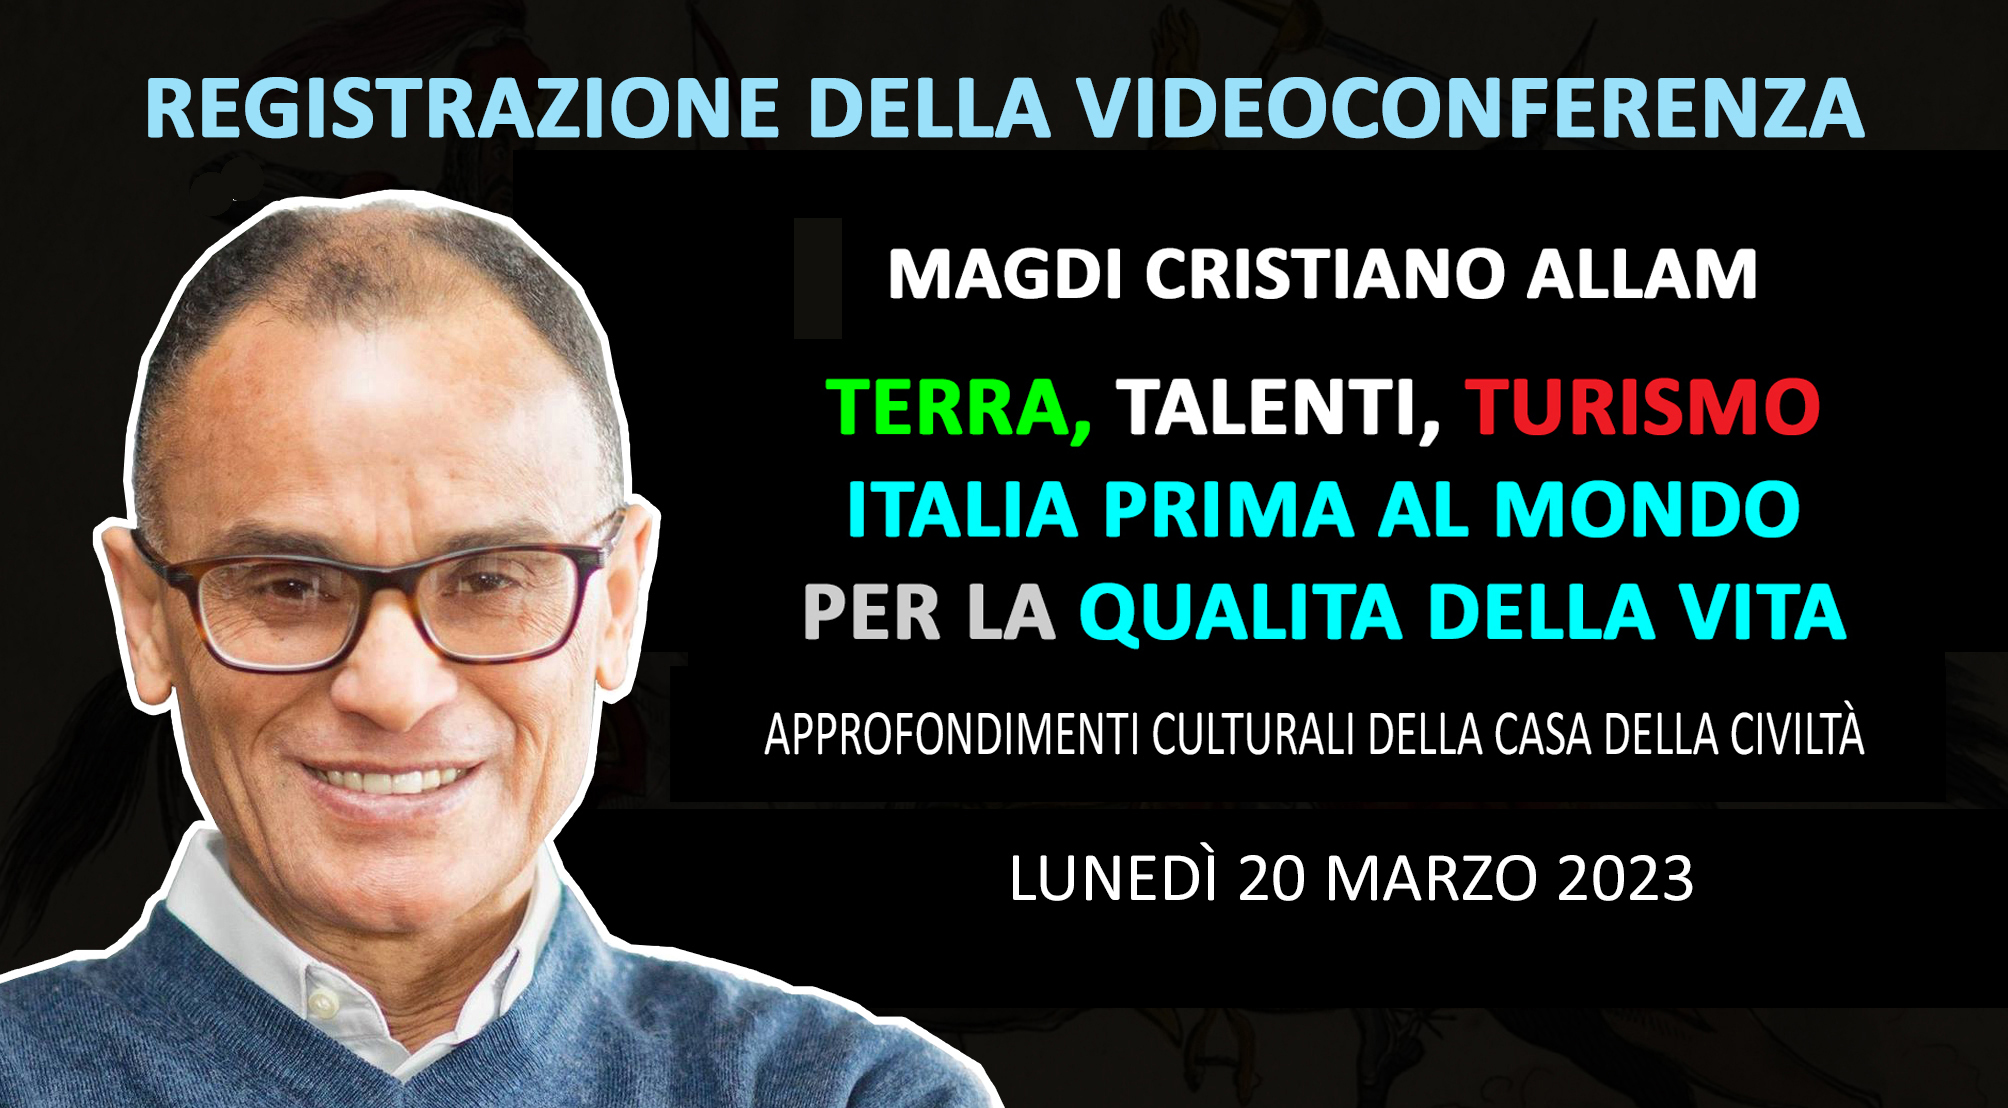 Registrazione della videoconferenza di MAGDI CRISTIANO ALLAM “Terra, Turismo, Talenti. Italia prima al Mondo per la qualità della vita” (Lunedì 20 marzo 2023)